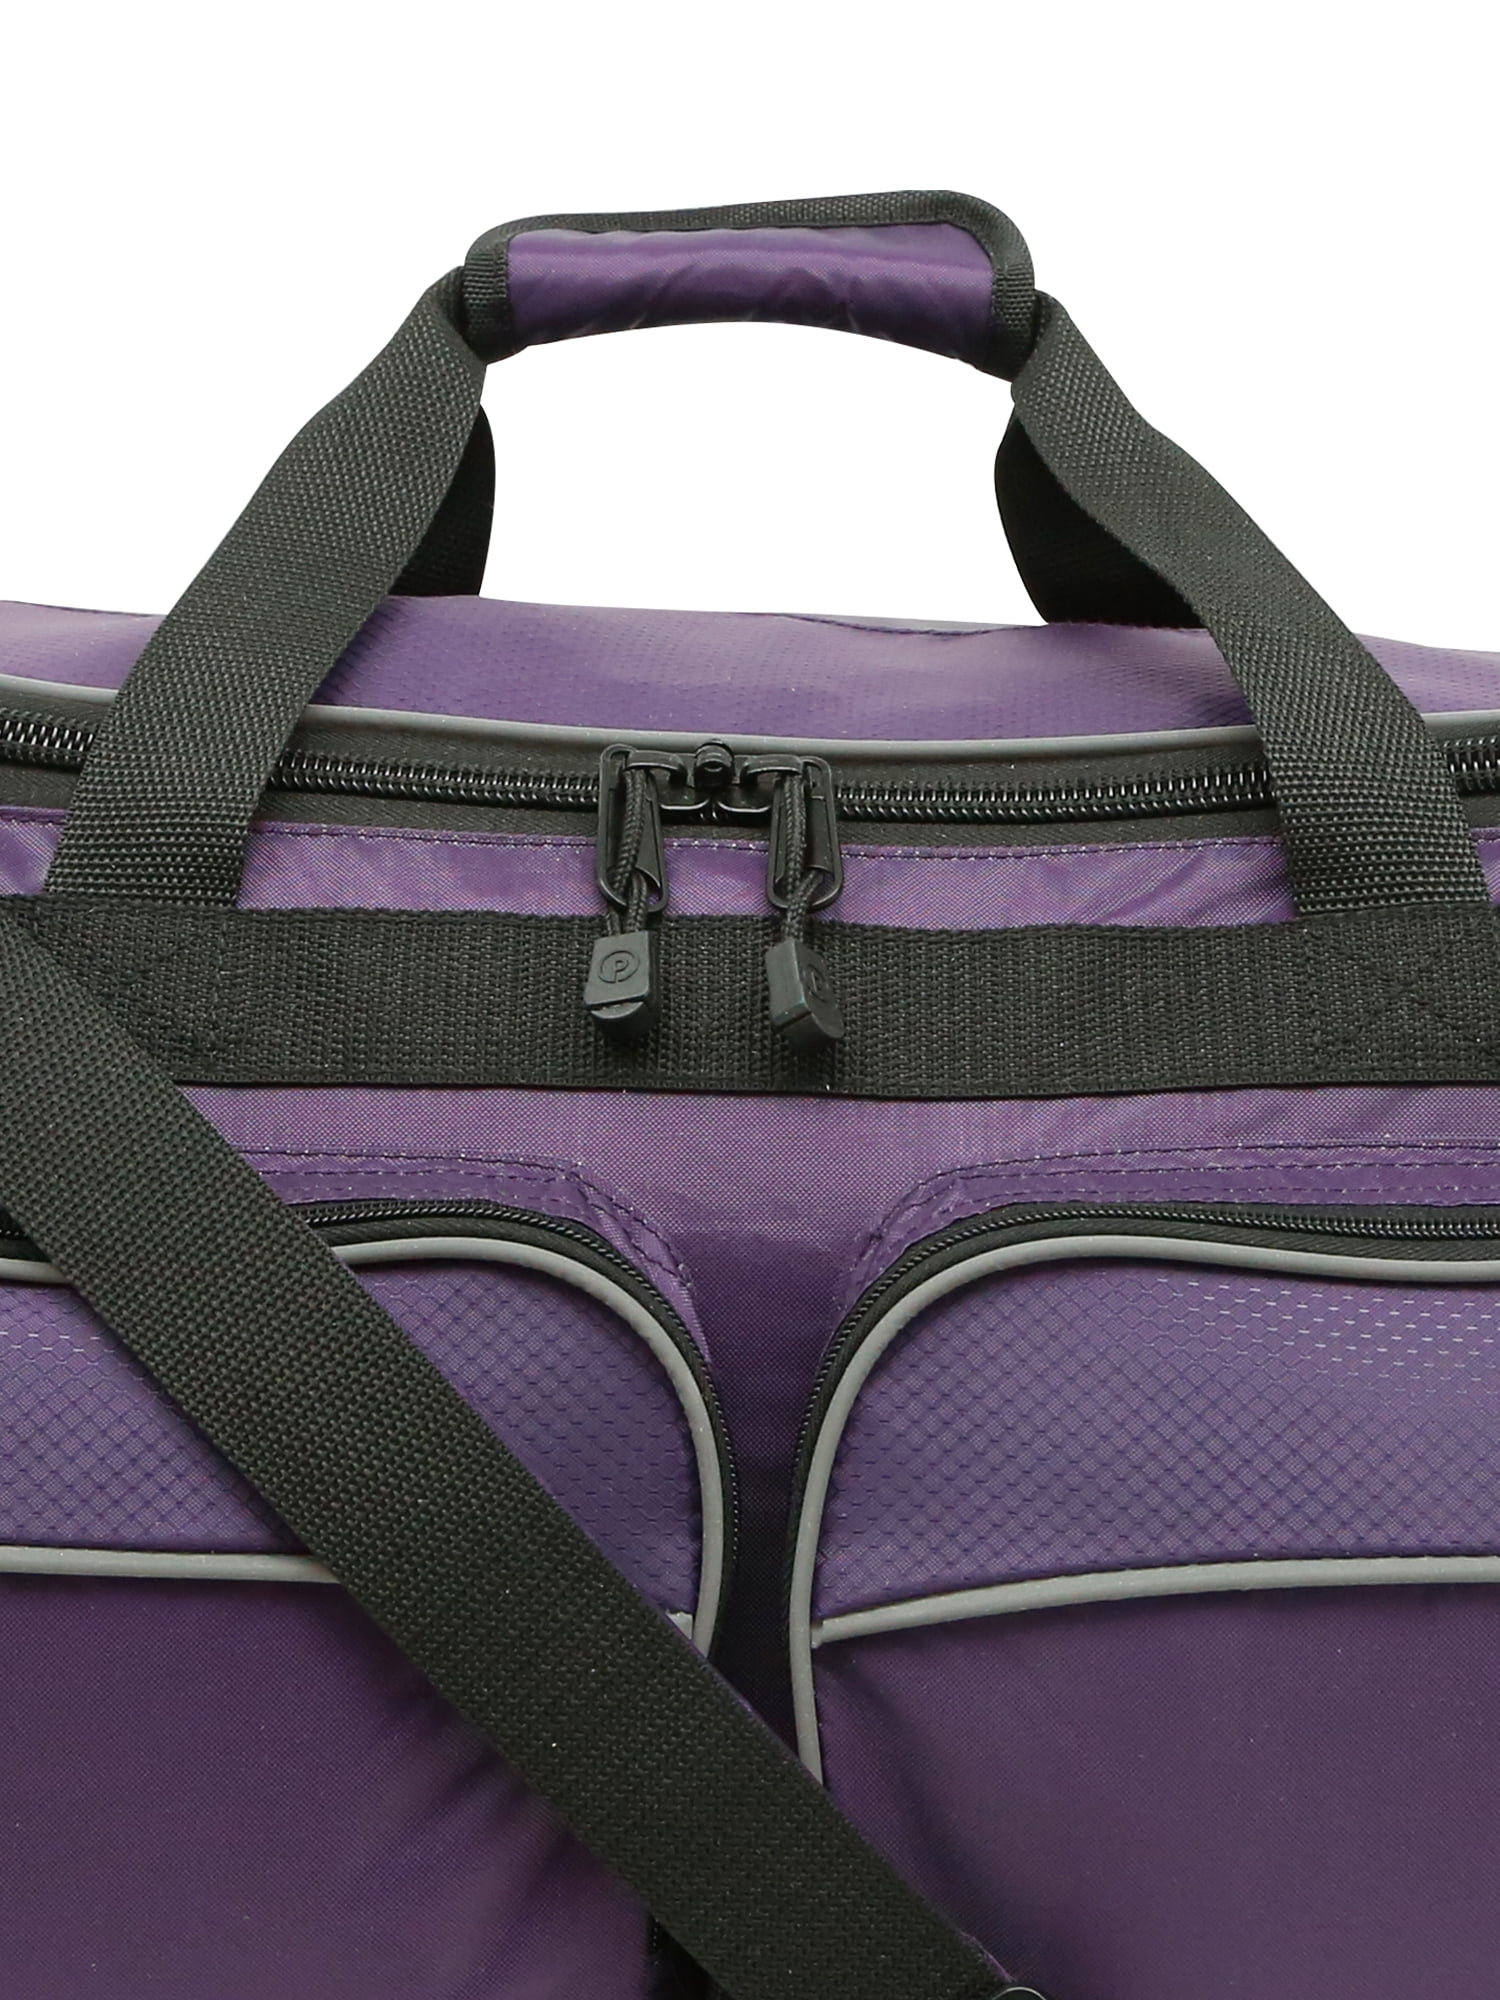 Protégé 20 Collapsible Sport and Travel Duffel Bag, Black 